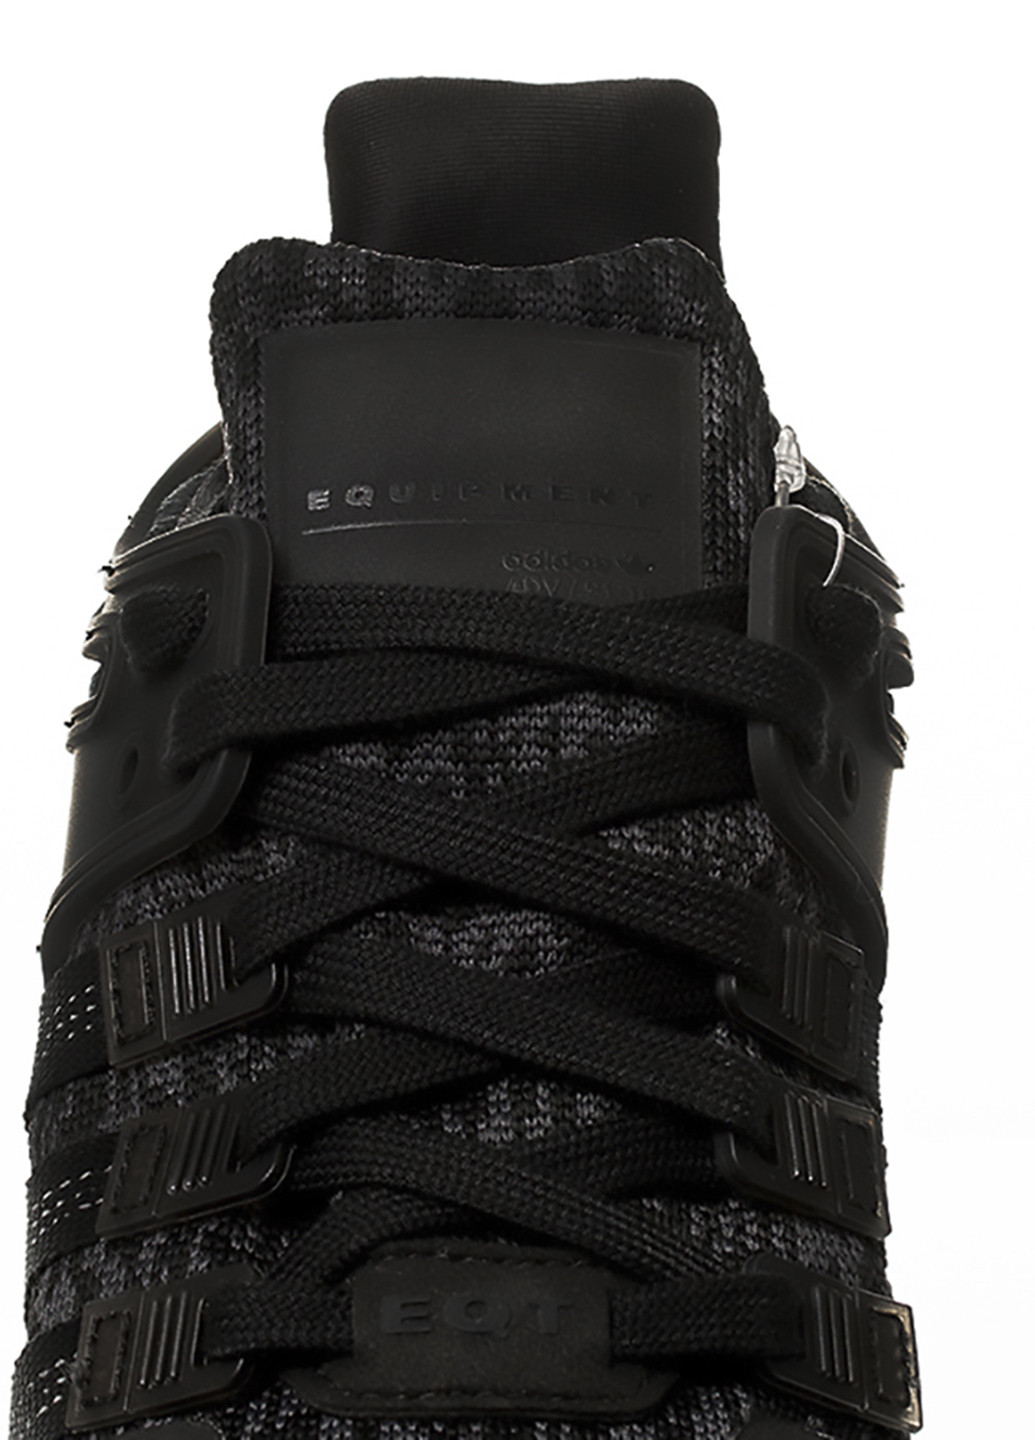 Черные демисезонные кроссовки adidas EQT SUPPORT ADV